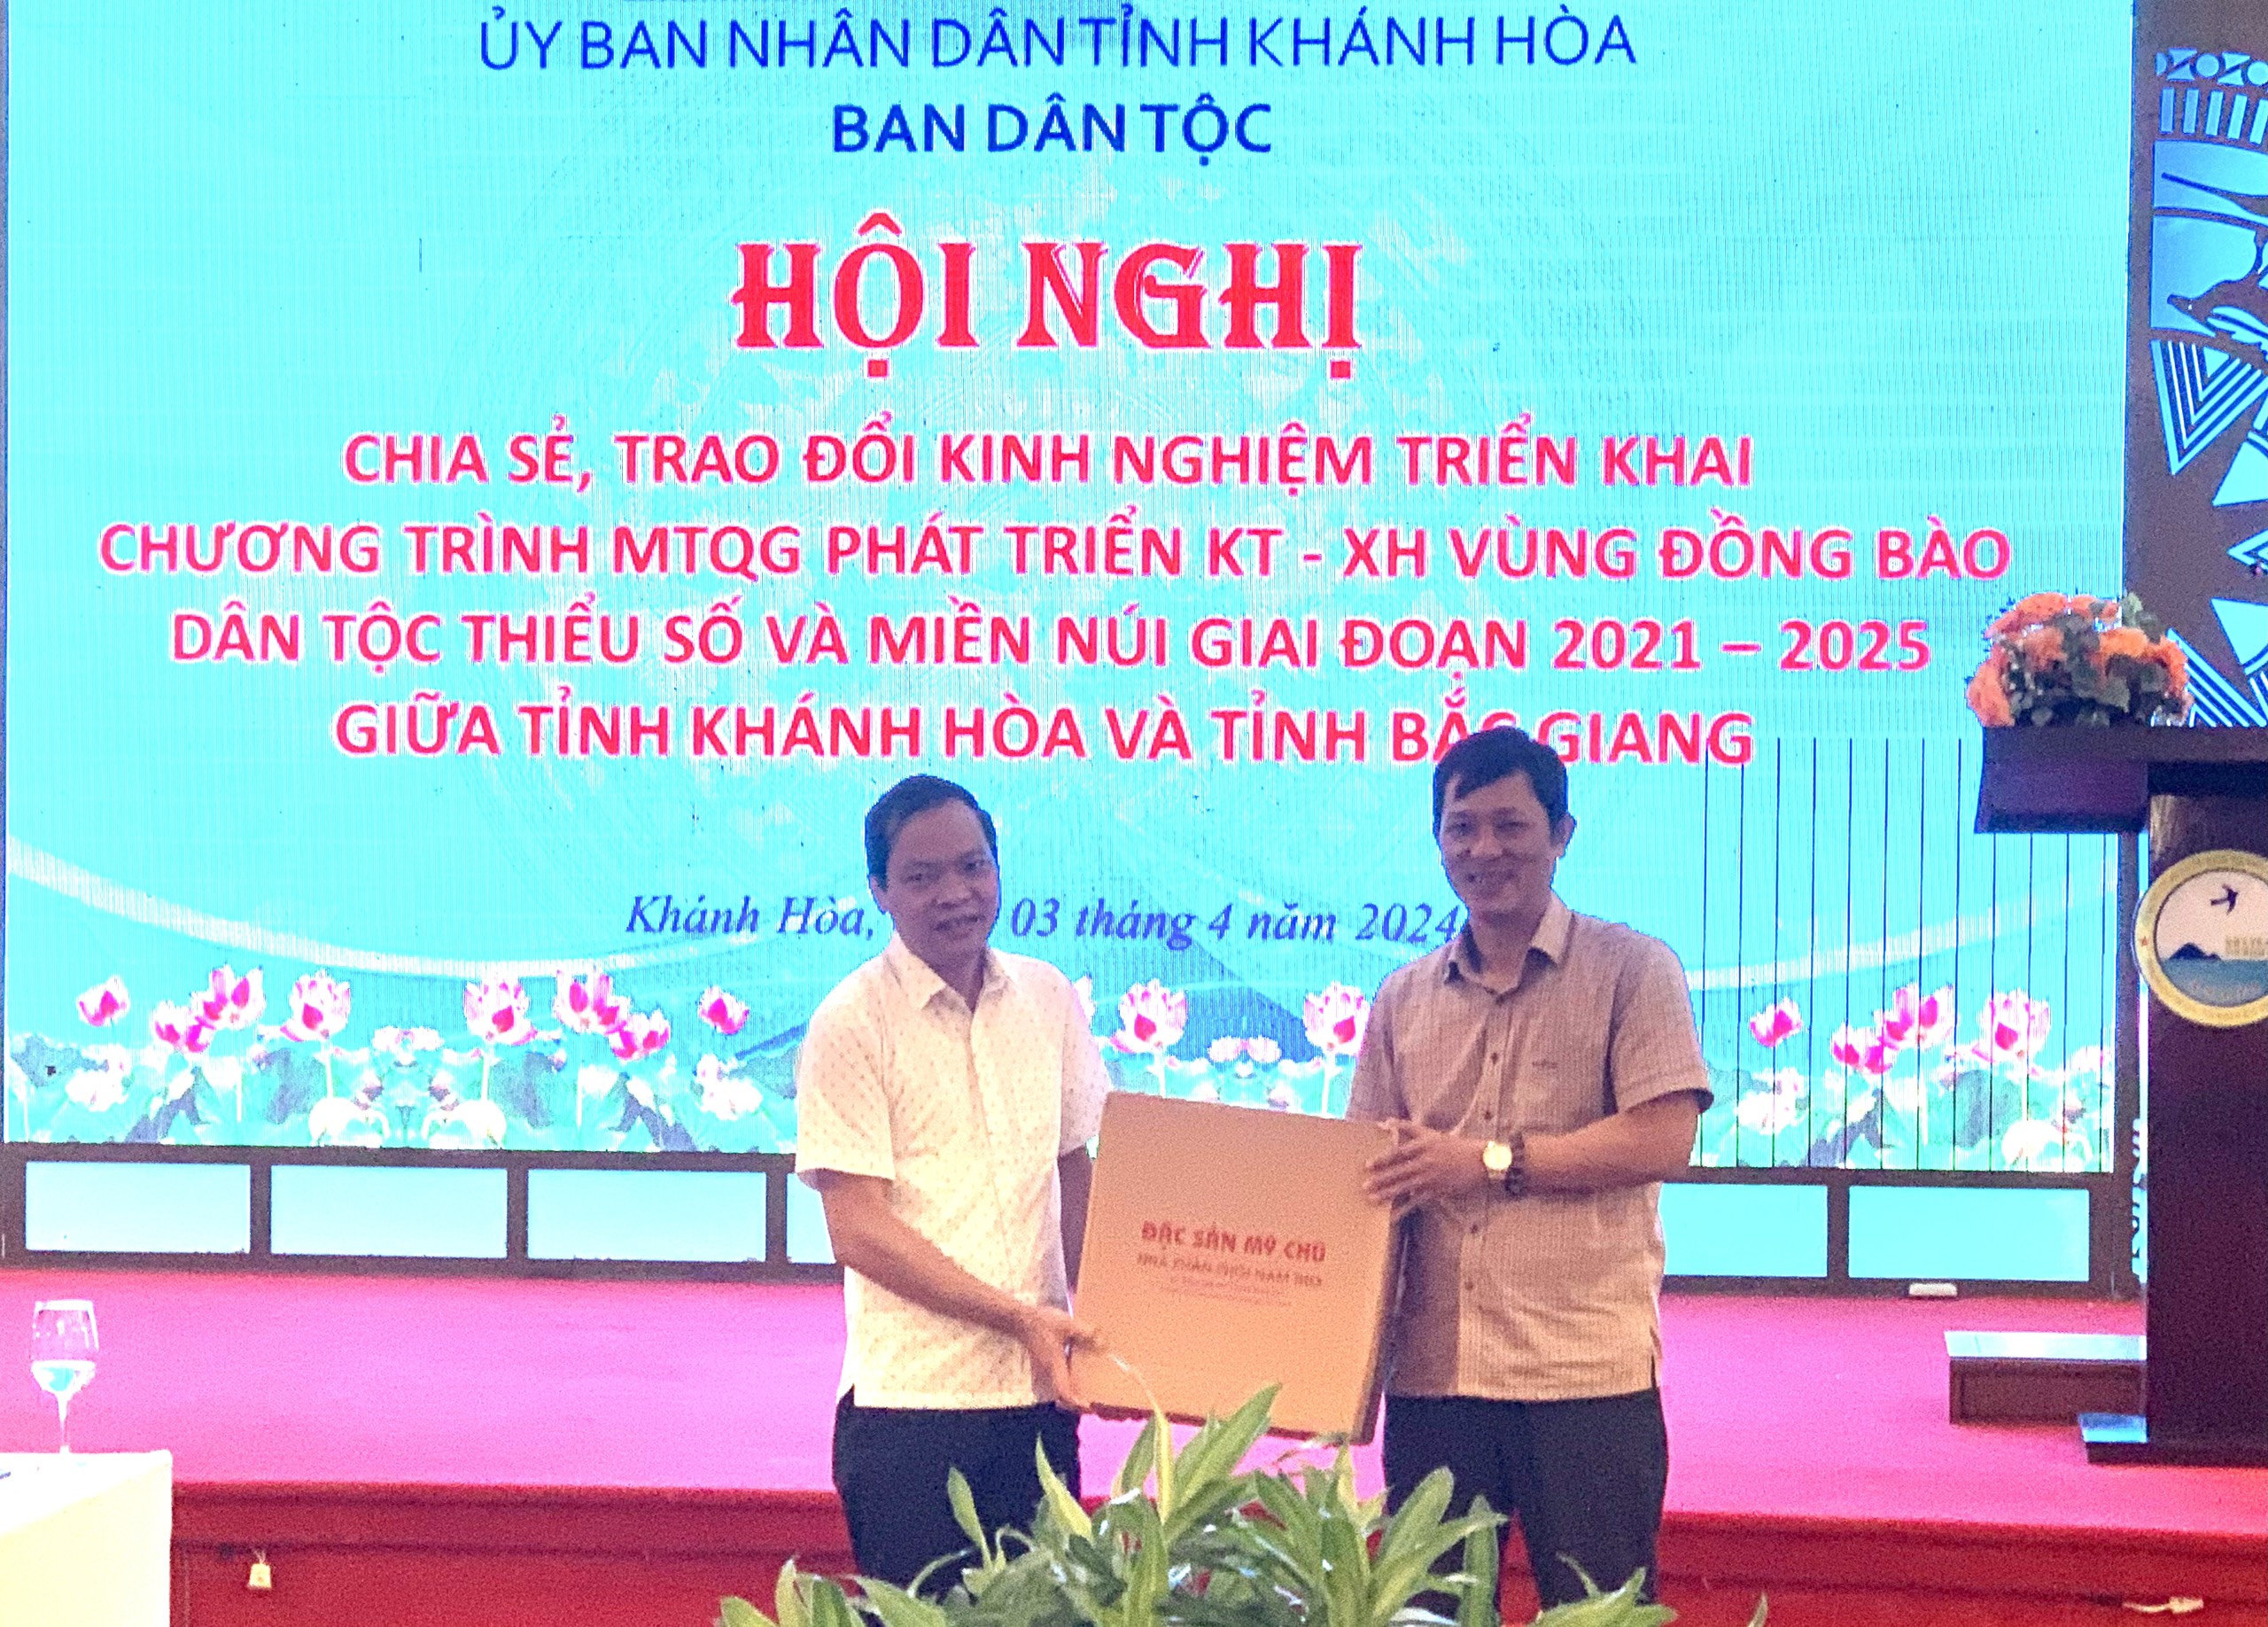 Hội nghị trao đổi, chia sẻ kinh nghiệm triển khai chương trình MTQG phát triển KT-XH vùng đồng bào DTTS&MN giữa Ban Dân tộc tỉnh Khánh Hòa và Ban Dân tộc tỉnh Bắc Giang